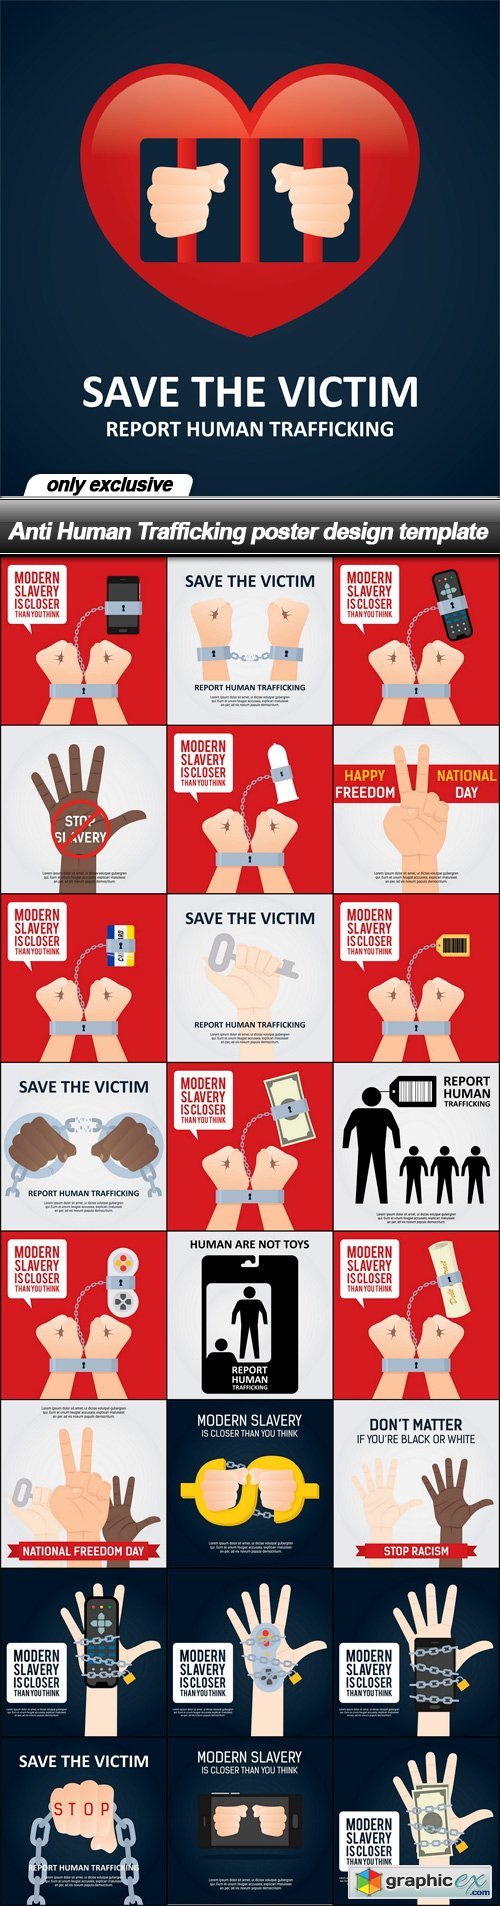 Anti Human Trafficking poster design template - 25 EPS